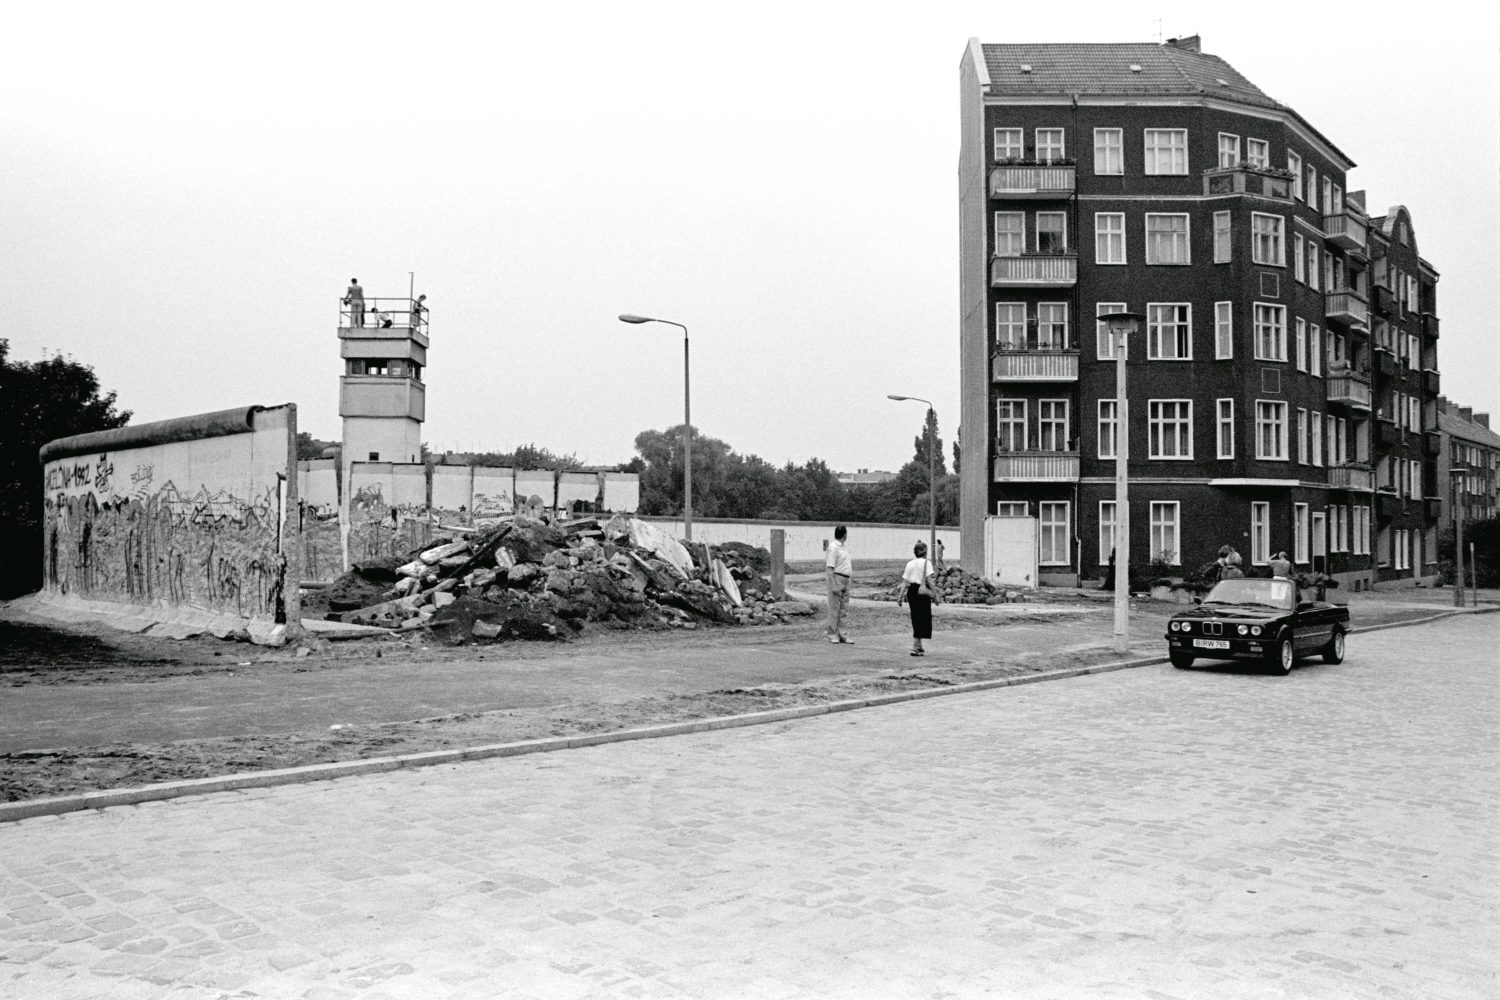 Wiedervereinigung Fotos Berlin: Reste der Berliner Mauer mit Wachturm an der Lohmühlenstraße, Blick von Neukölln nach Treptow. Aufnahme vom 30. Juni 1990. Foto: Imago/Imagebroker